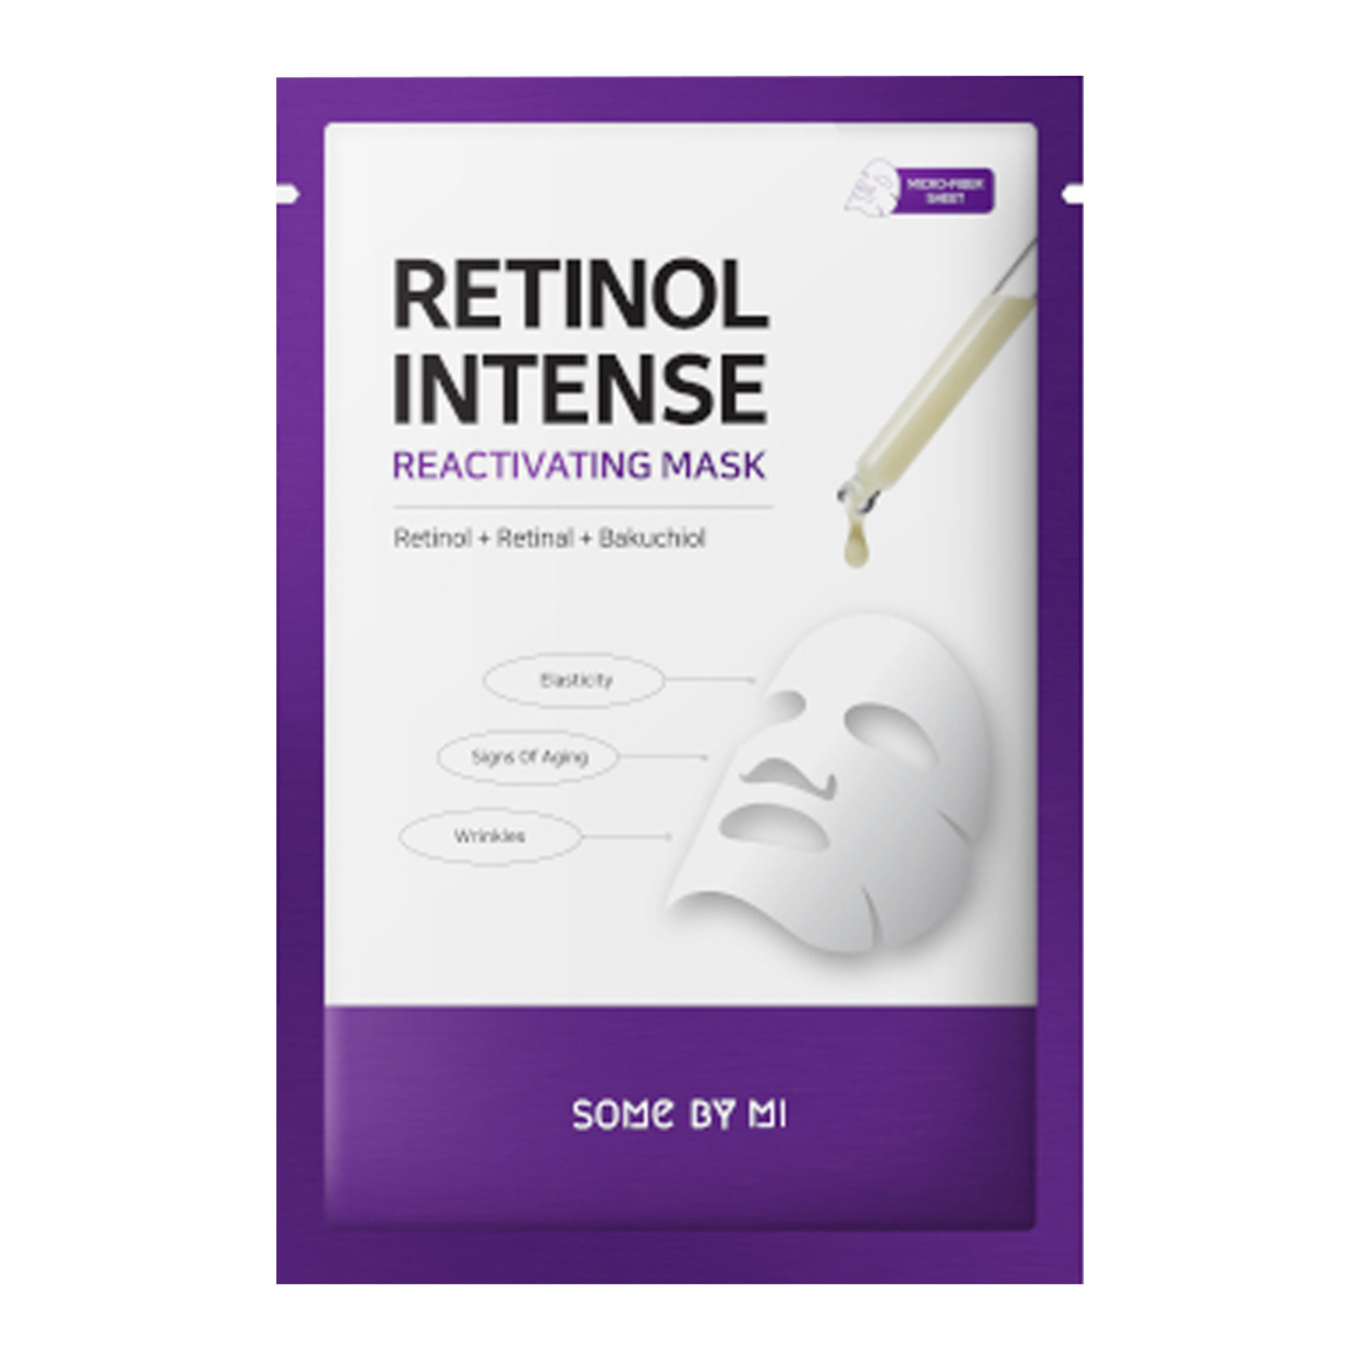 De Some By Mi Retinol Intense Reactivating Mask is een sheet masker dat is geformuleerd met Retinol, Retinal en Bakuchiol om tekenen van veroudering tegen te gaan door de elasticiteit van de huid te verbeteren zonder enige irritatie